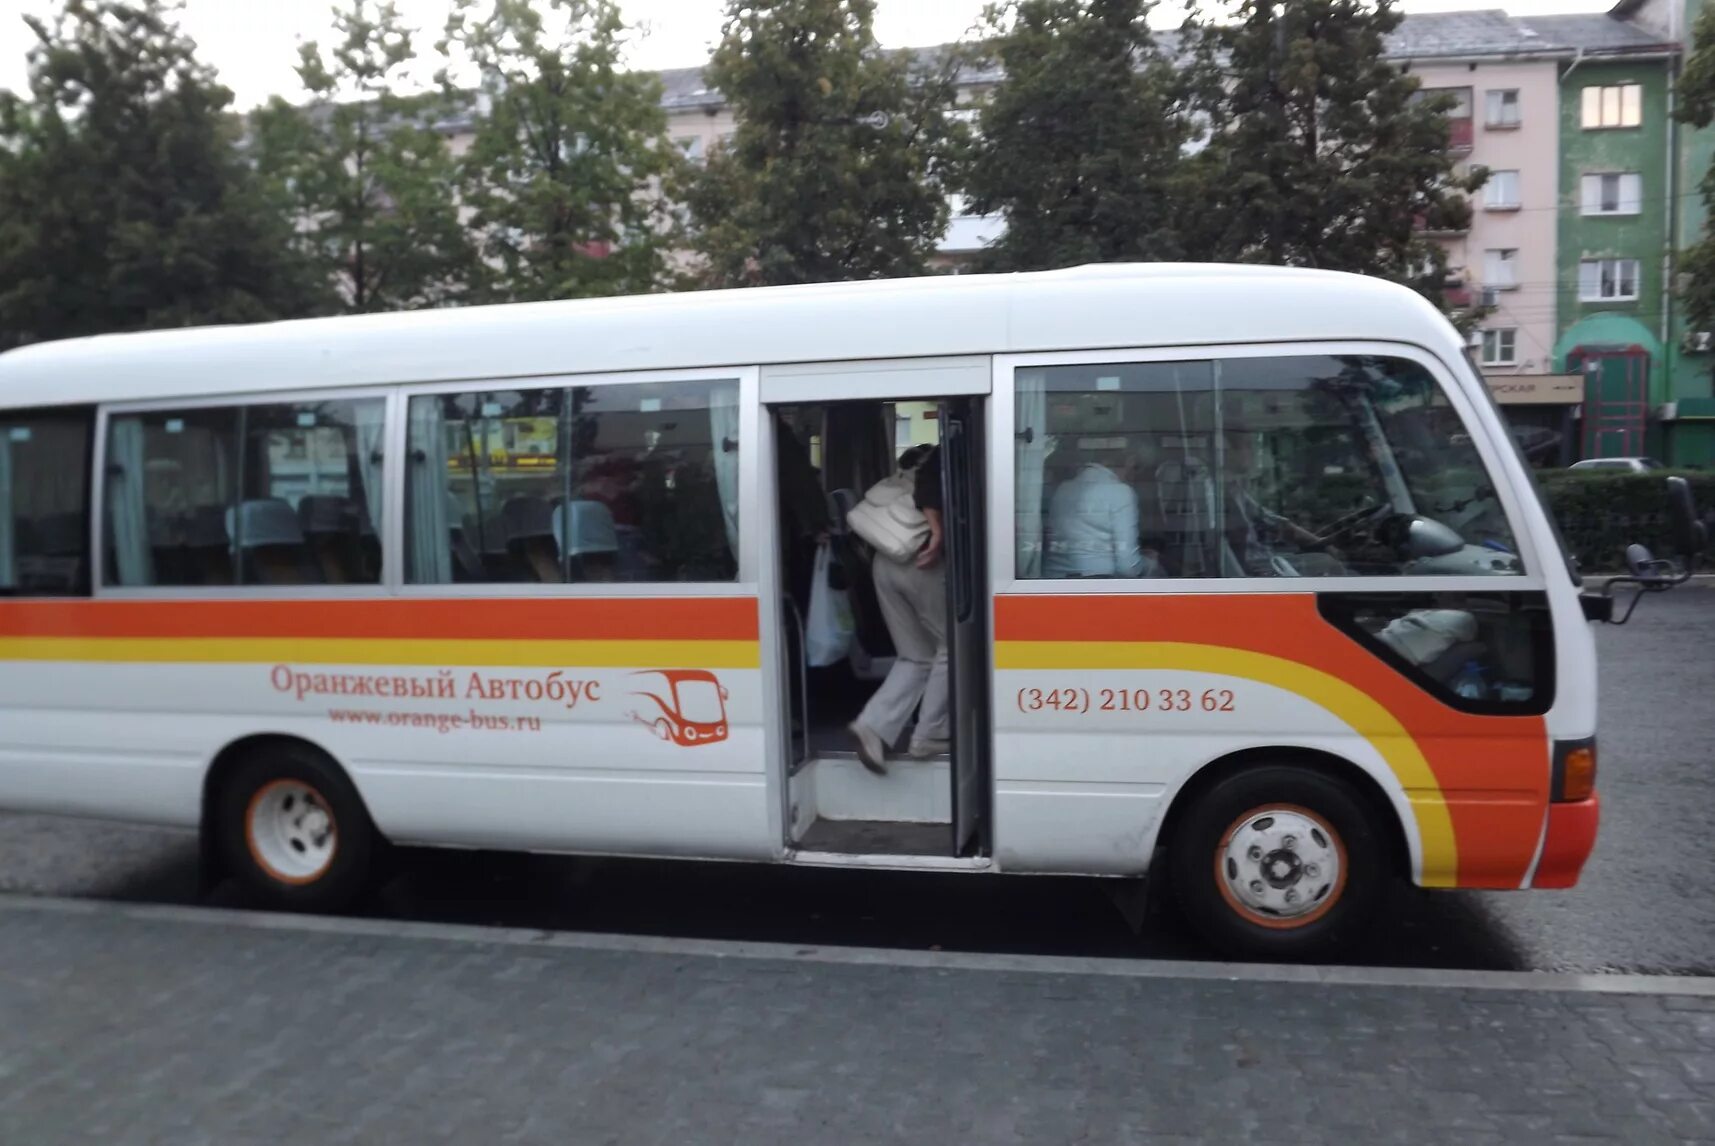 Сайт оранжевый автобус пермь. Оранжевый автобус. Туроператор оранжевый автобус. Автобусы Ивеко оранжевый. Оранжевый маленький автобус.